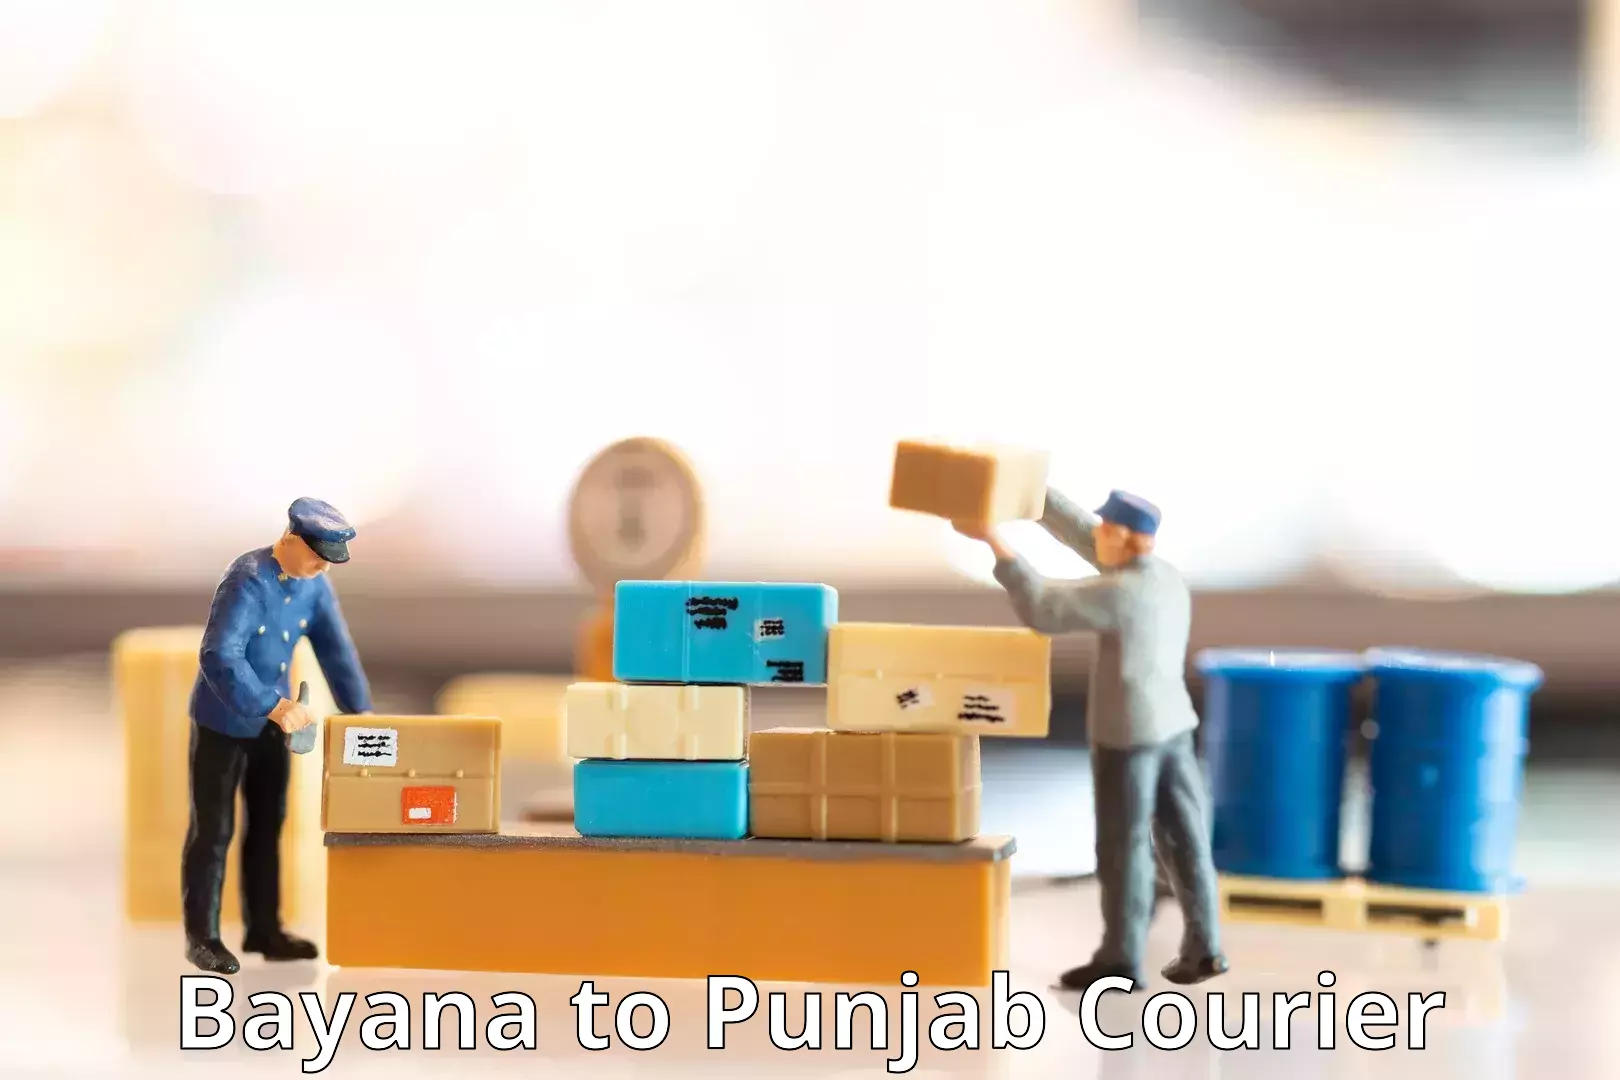 Bulk shipment Bayana to Punjab